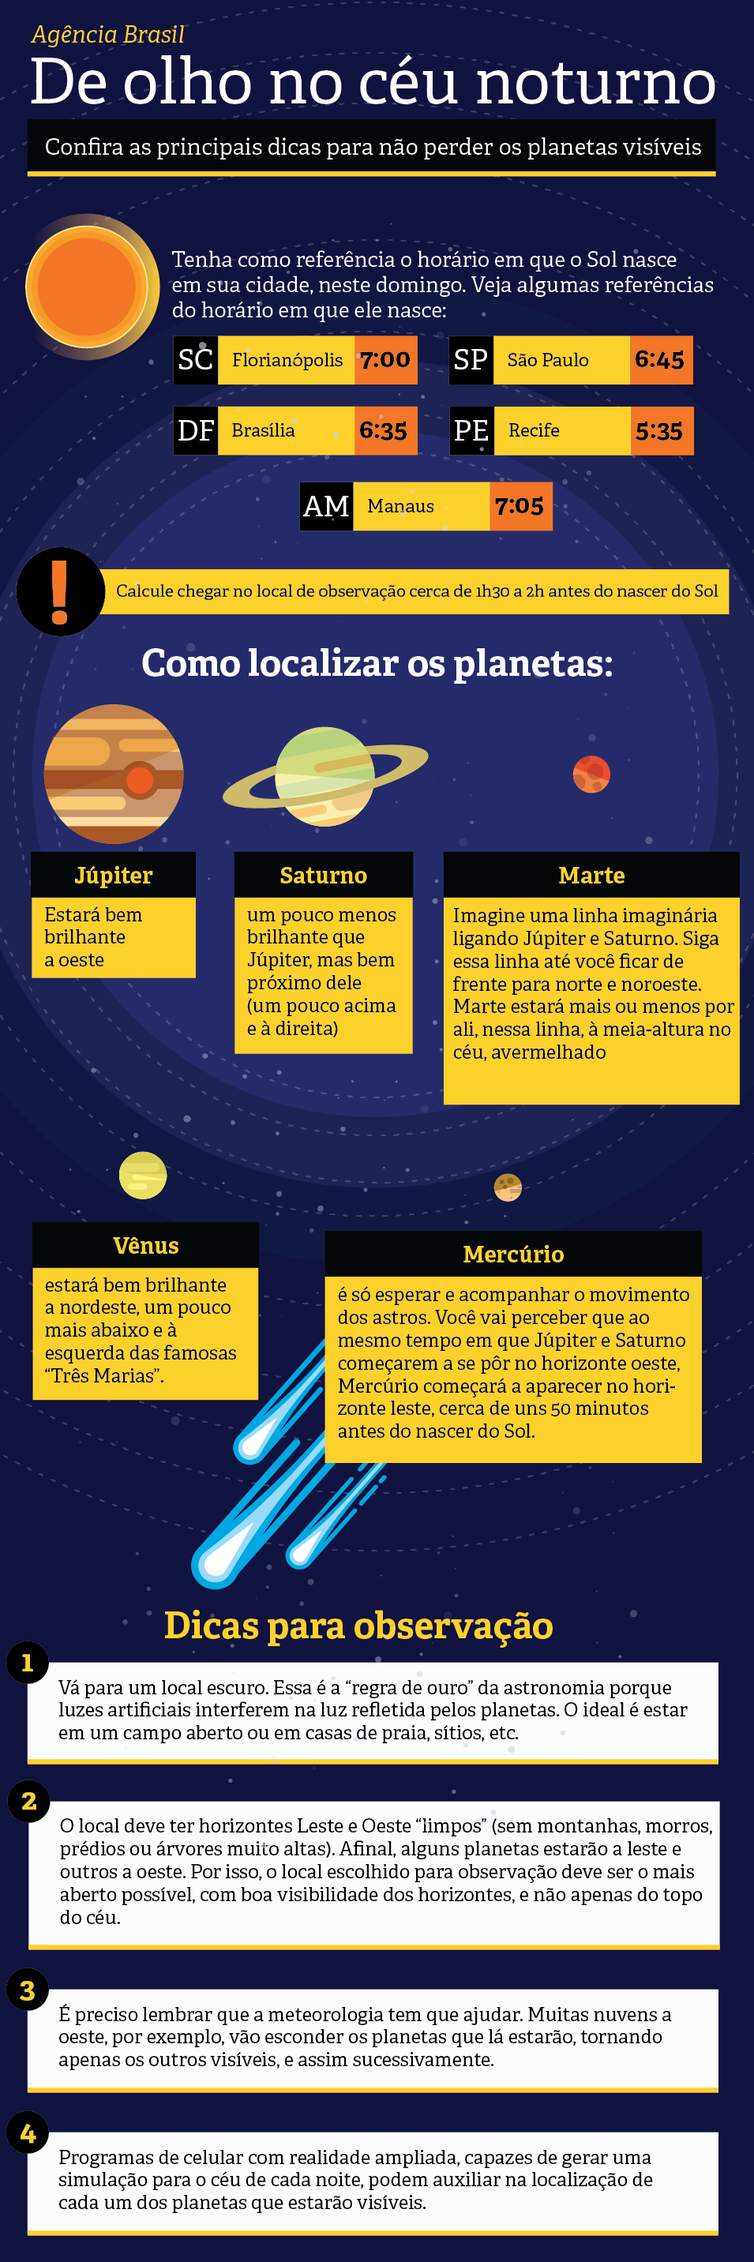 Infográfico mostra como ver 5 planetas no céu da madrugada neste domingo (26).